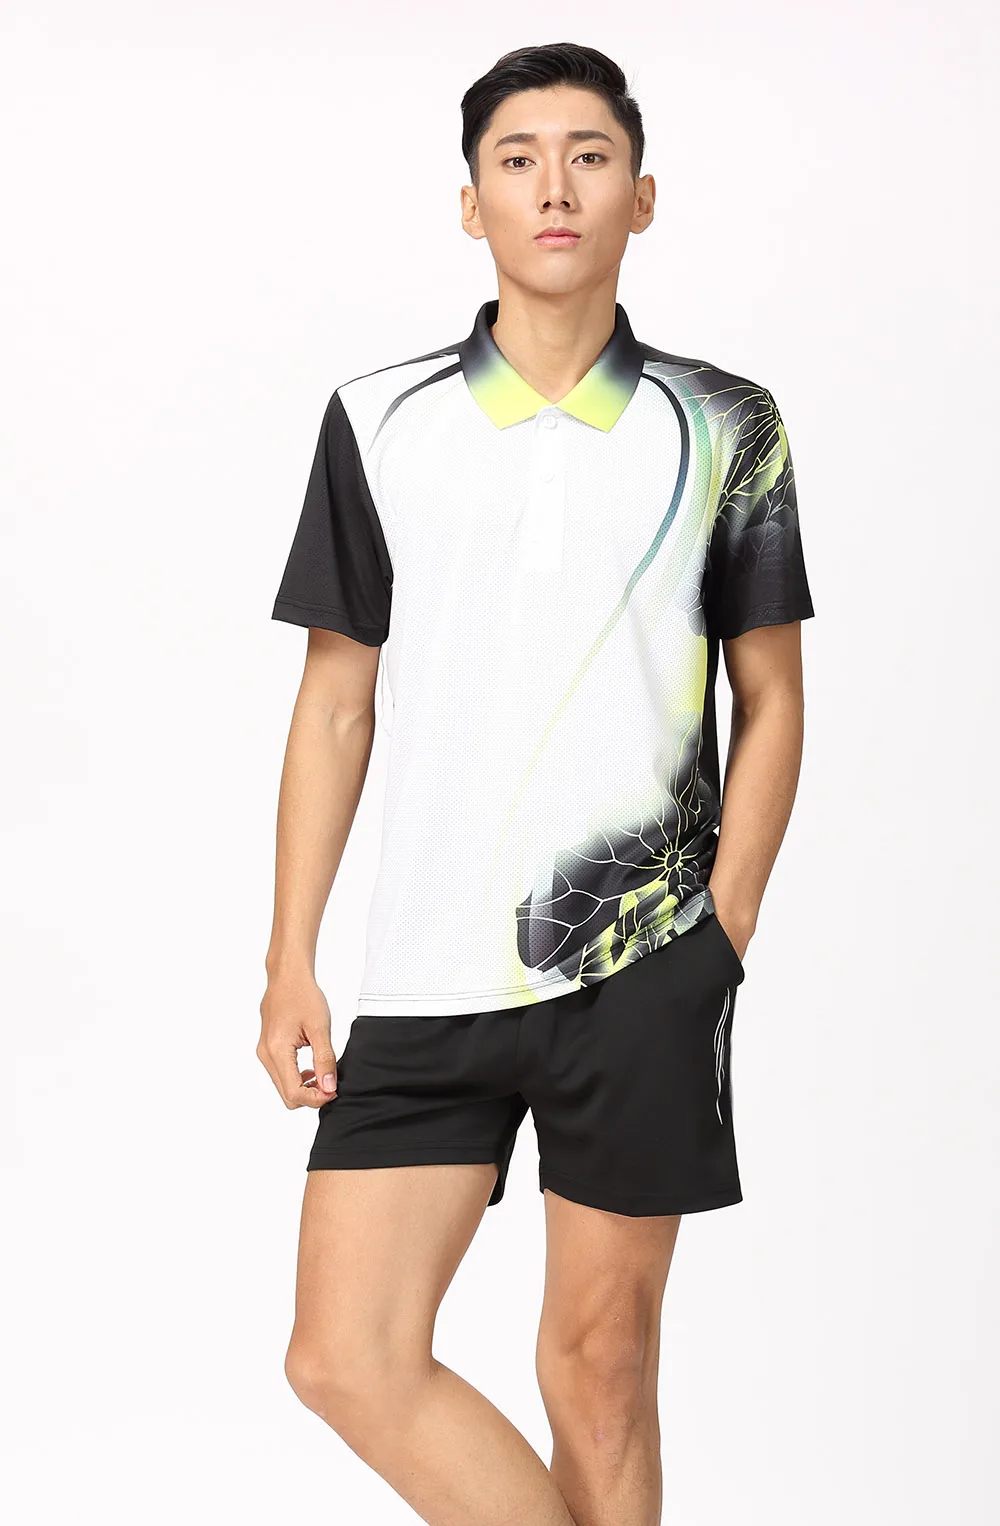 Новые спортивные комплекты одежды для бадминтона для женщин/мужчин, спортивная одежда для тенниса, одежда для настольного тенниса, быстросохнущая спортивная одежда 8809 - Цвет: Man one set